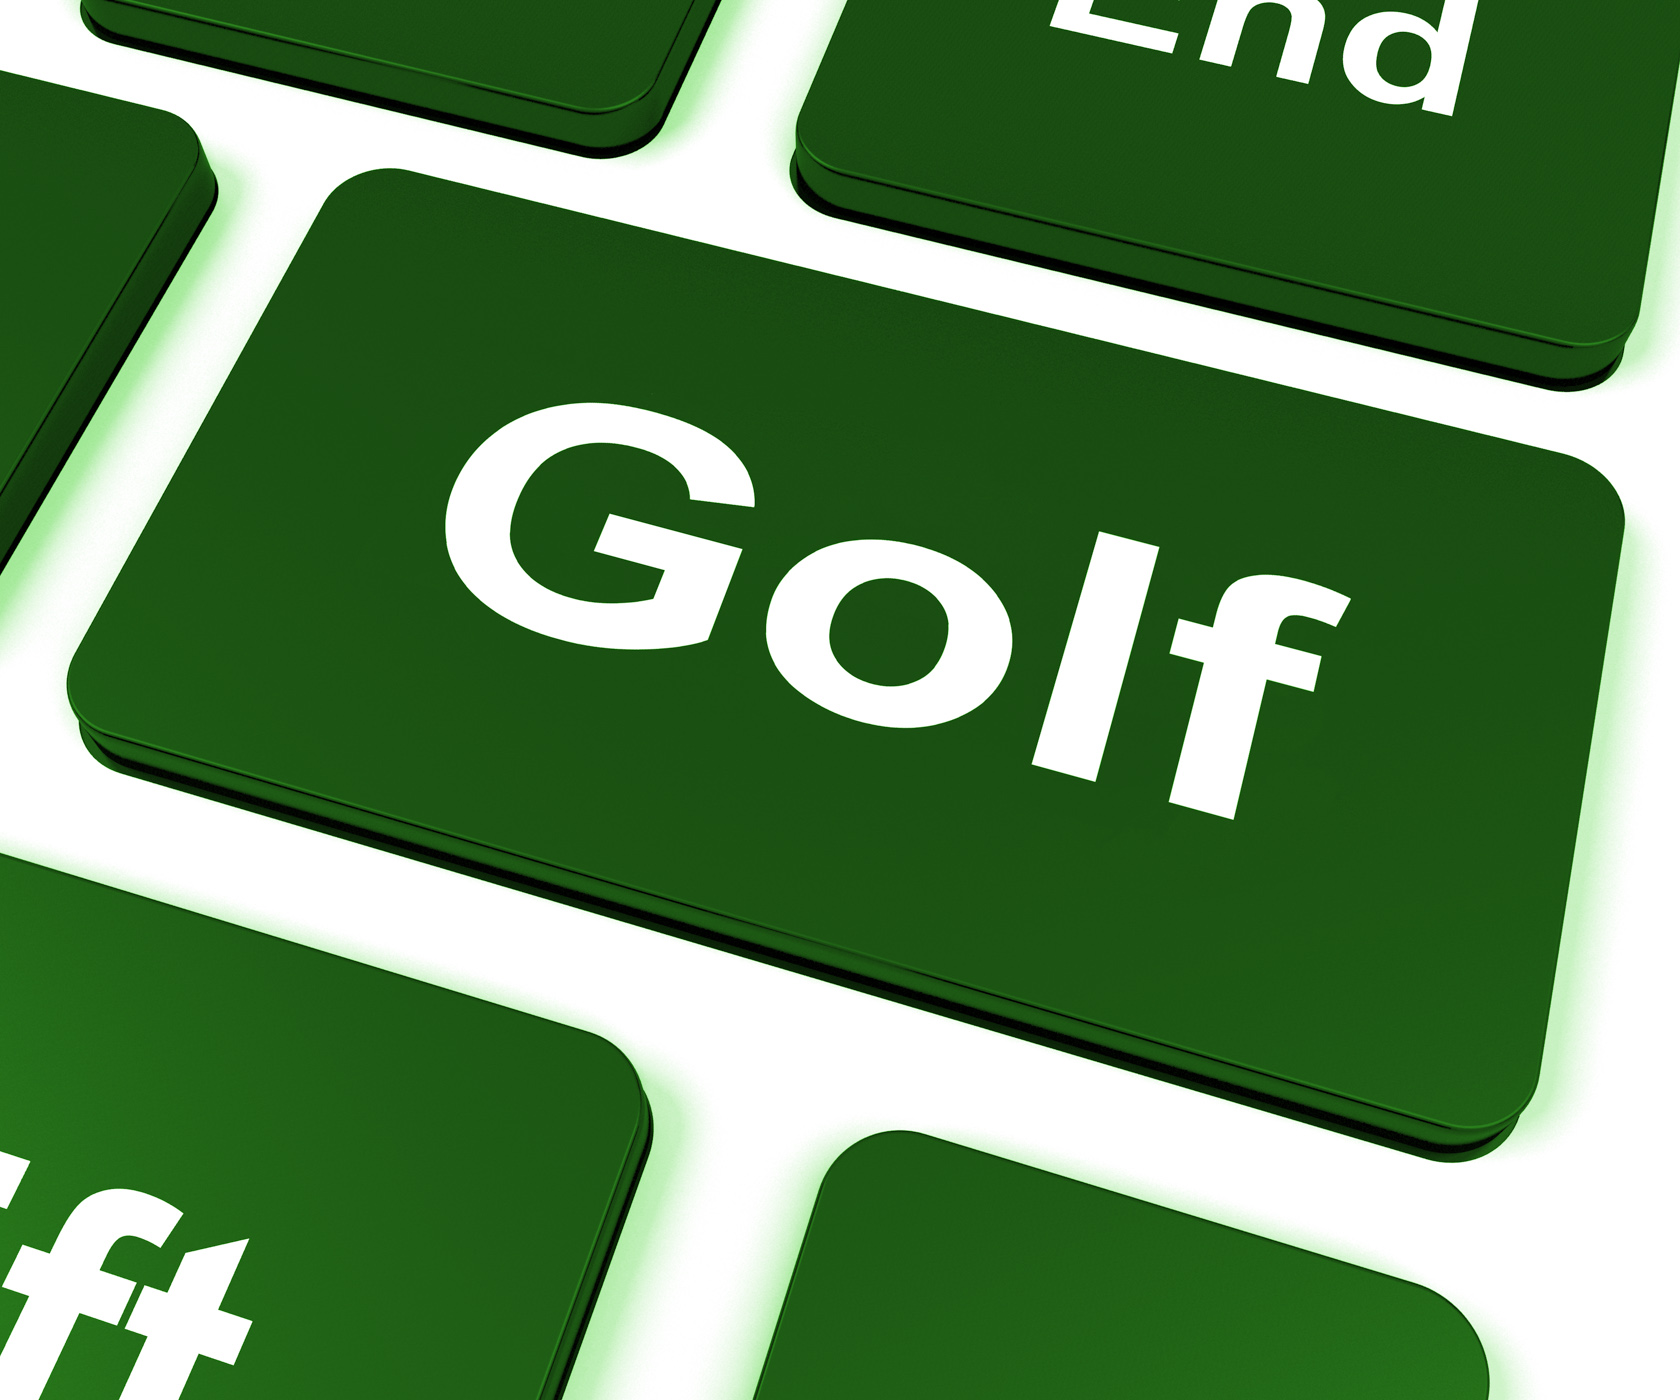 Golf key means golfer club or golfing photo